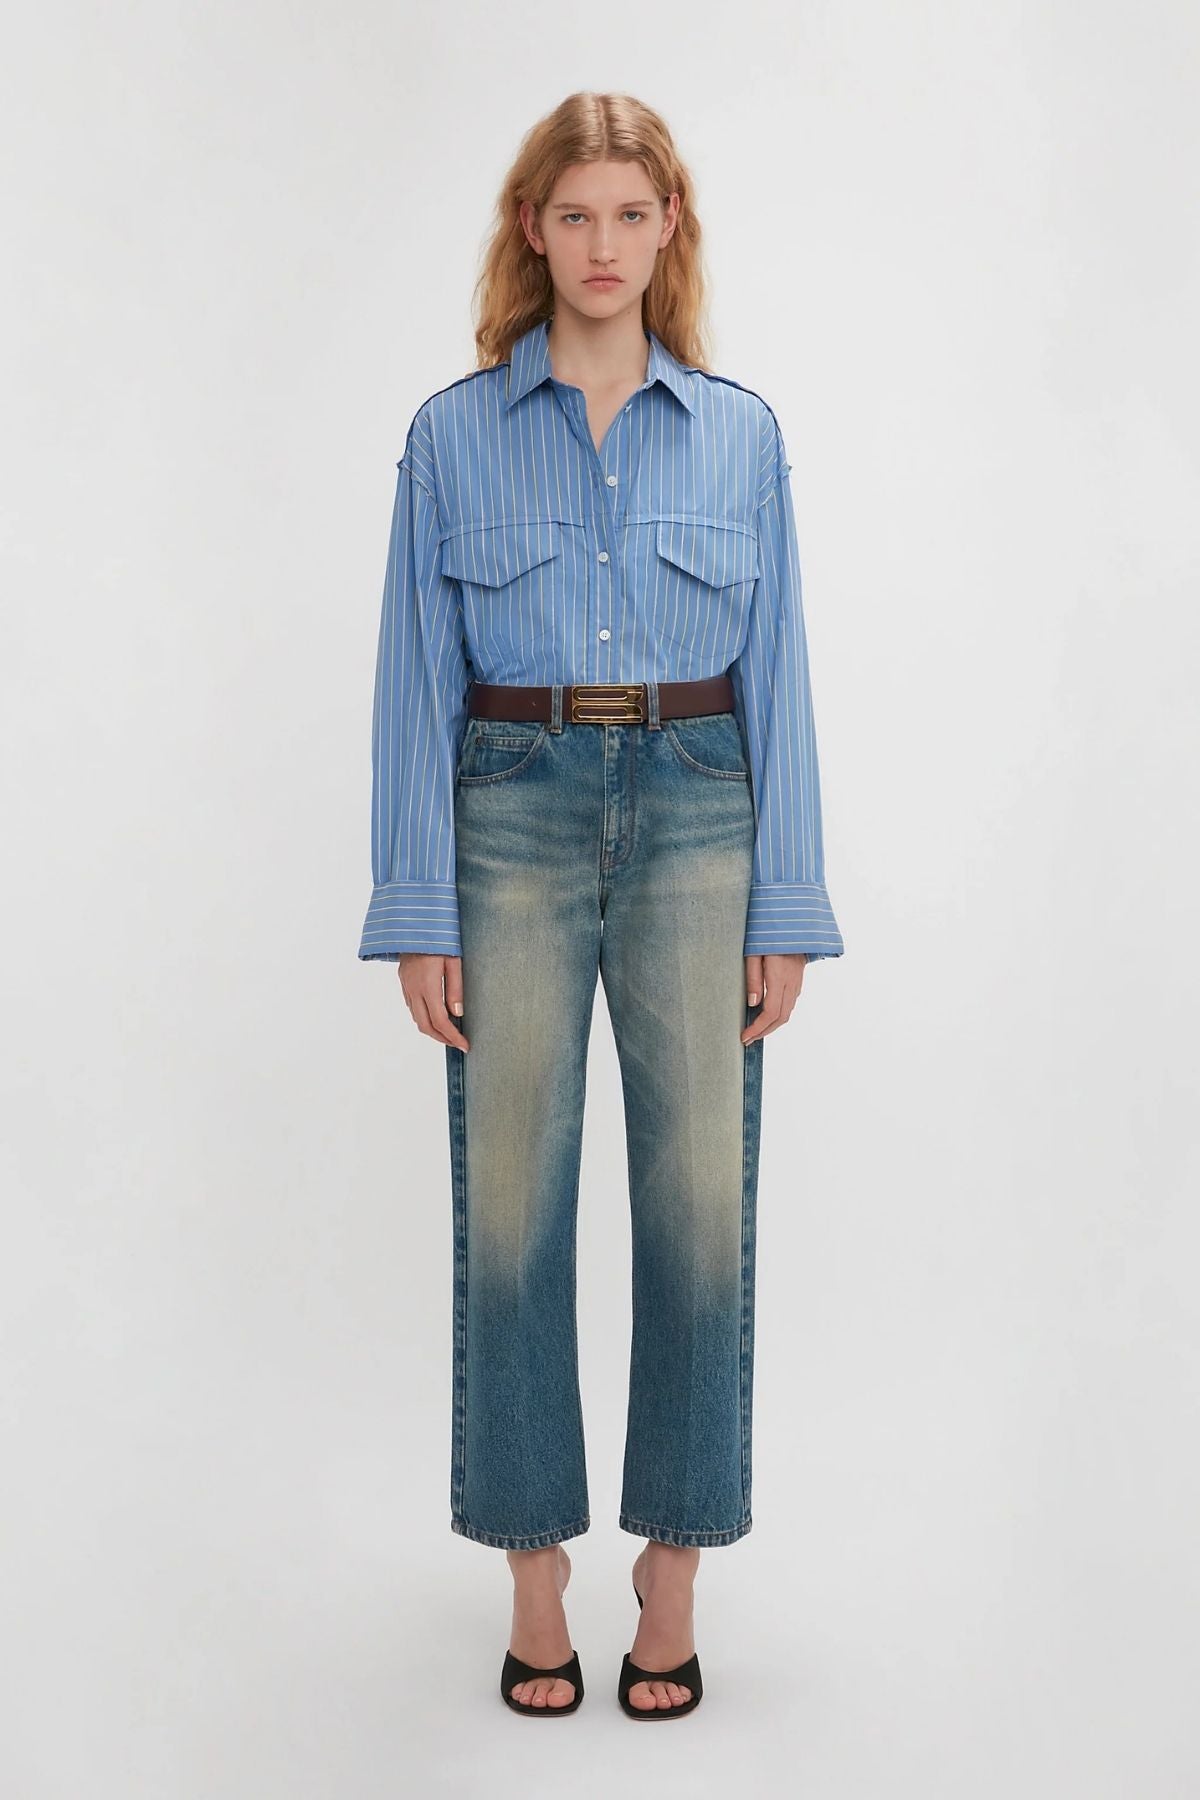 Victoria Beckham Cropped Seam Detail Shirt - Steel Blue